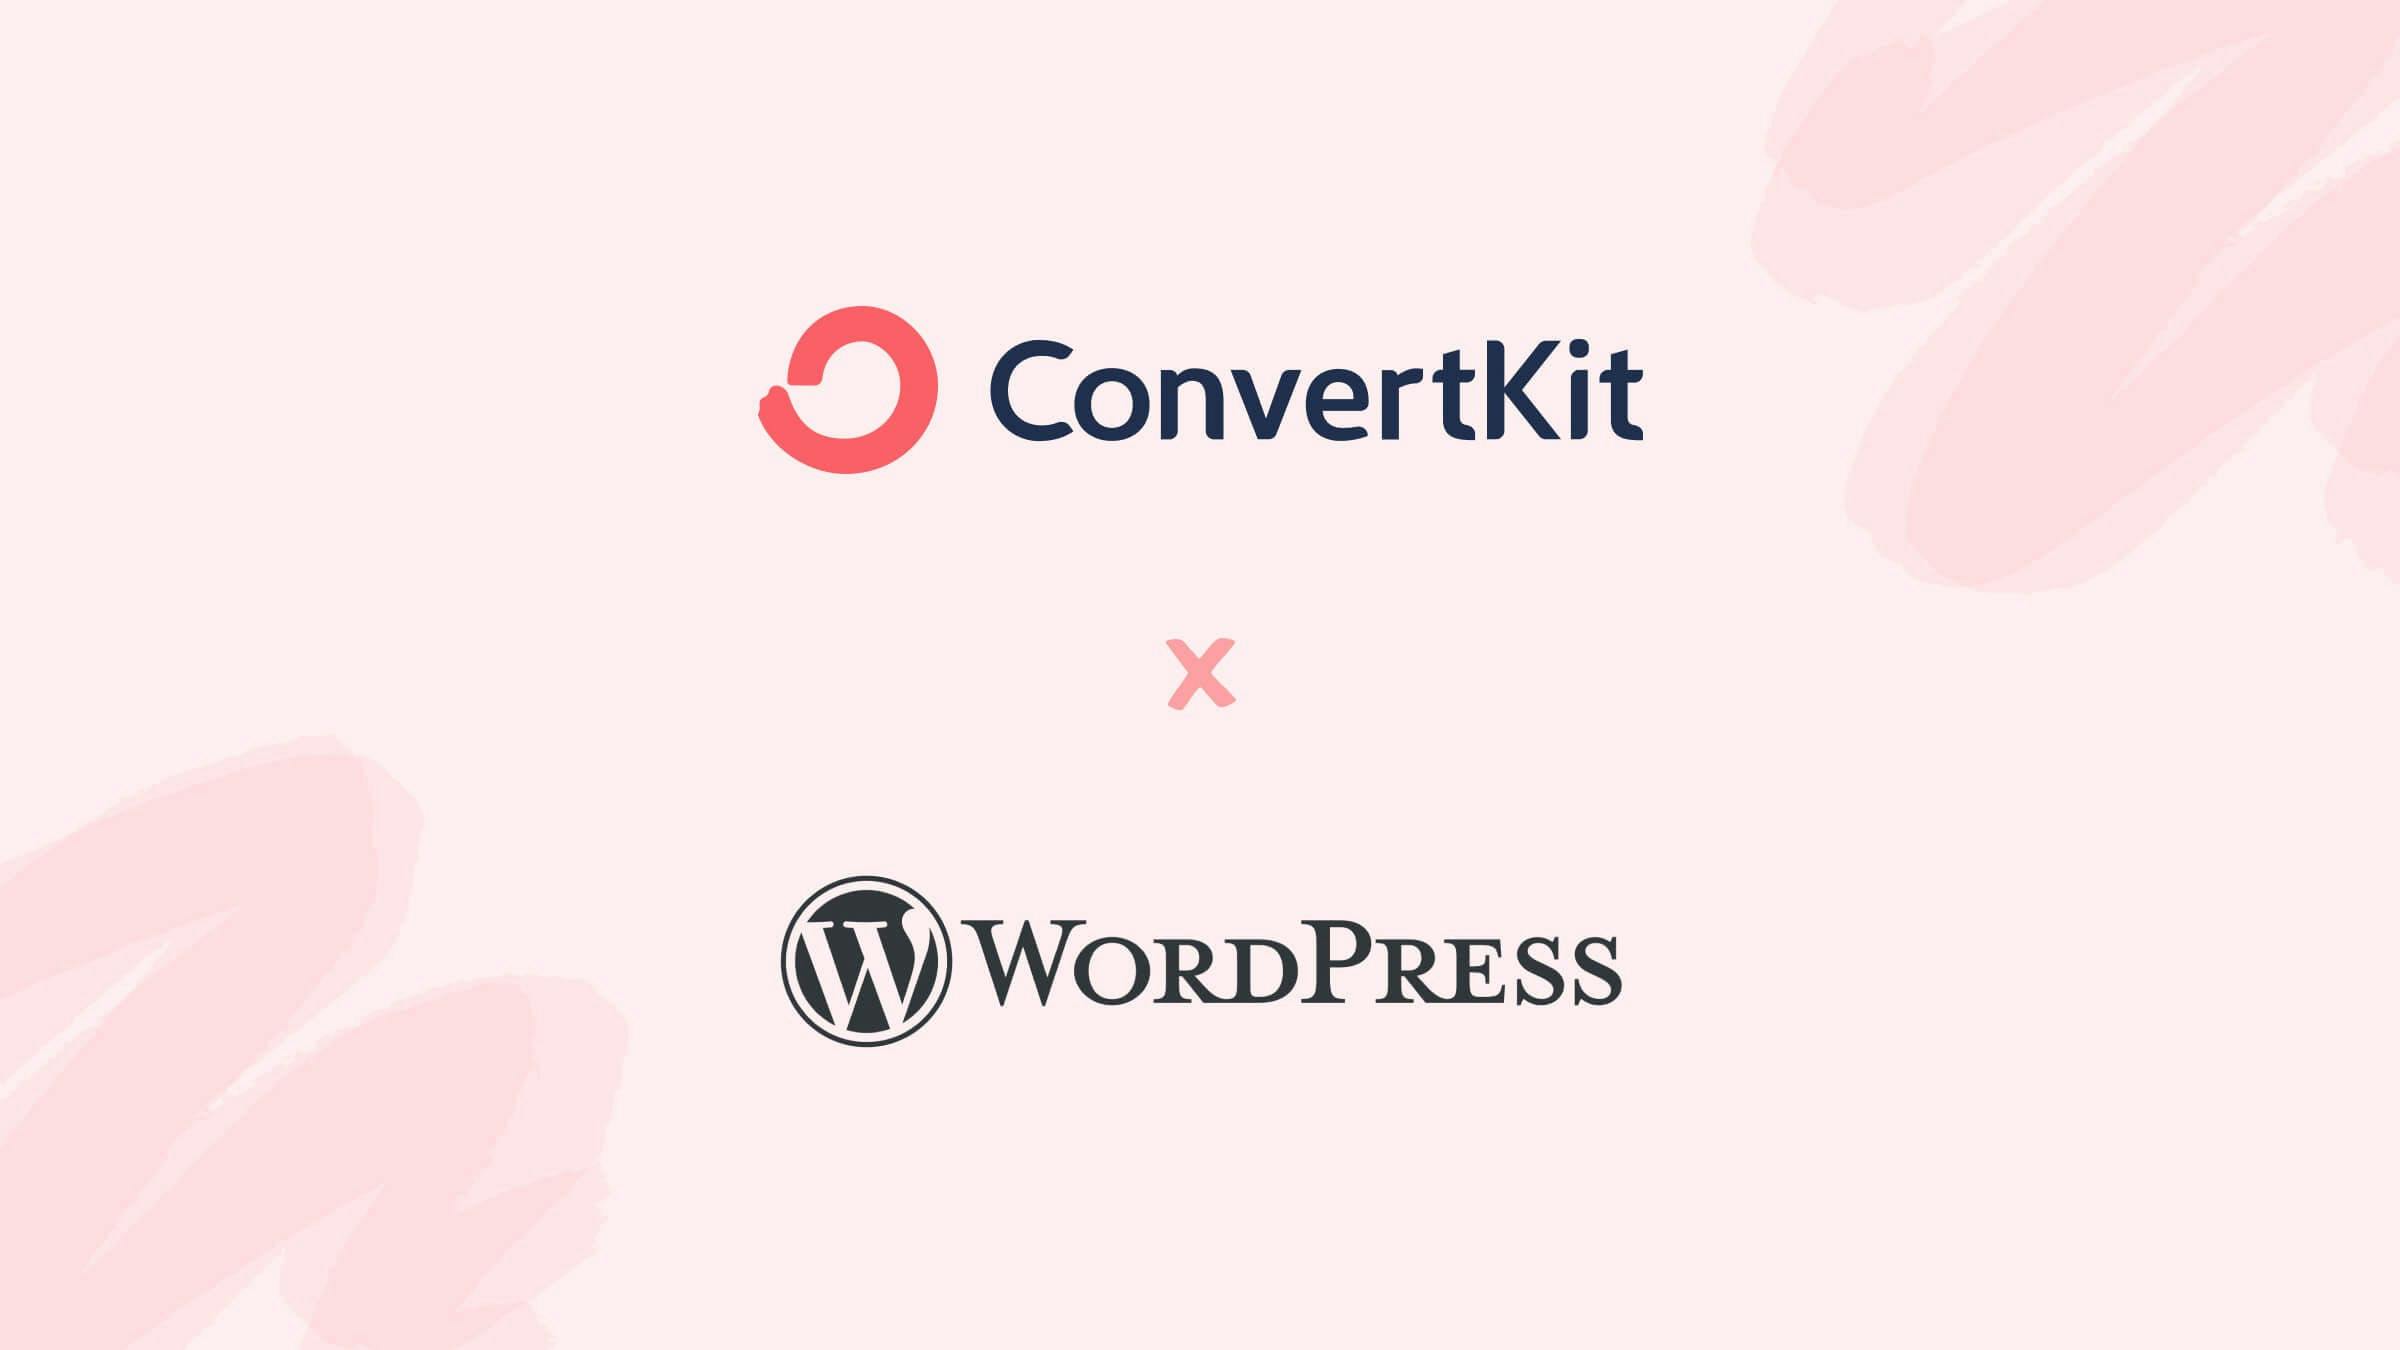 Image showing ConvertKit and WordPress logos